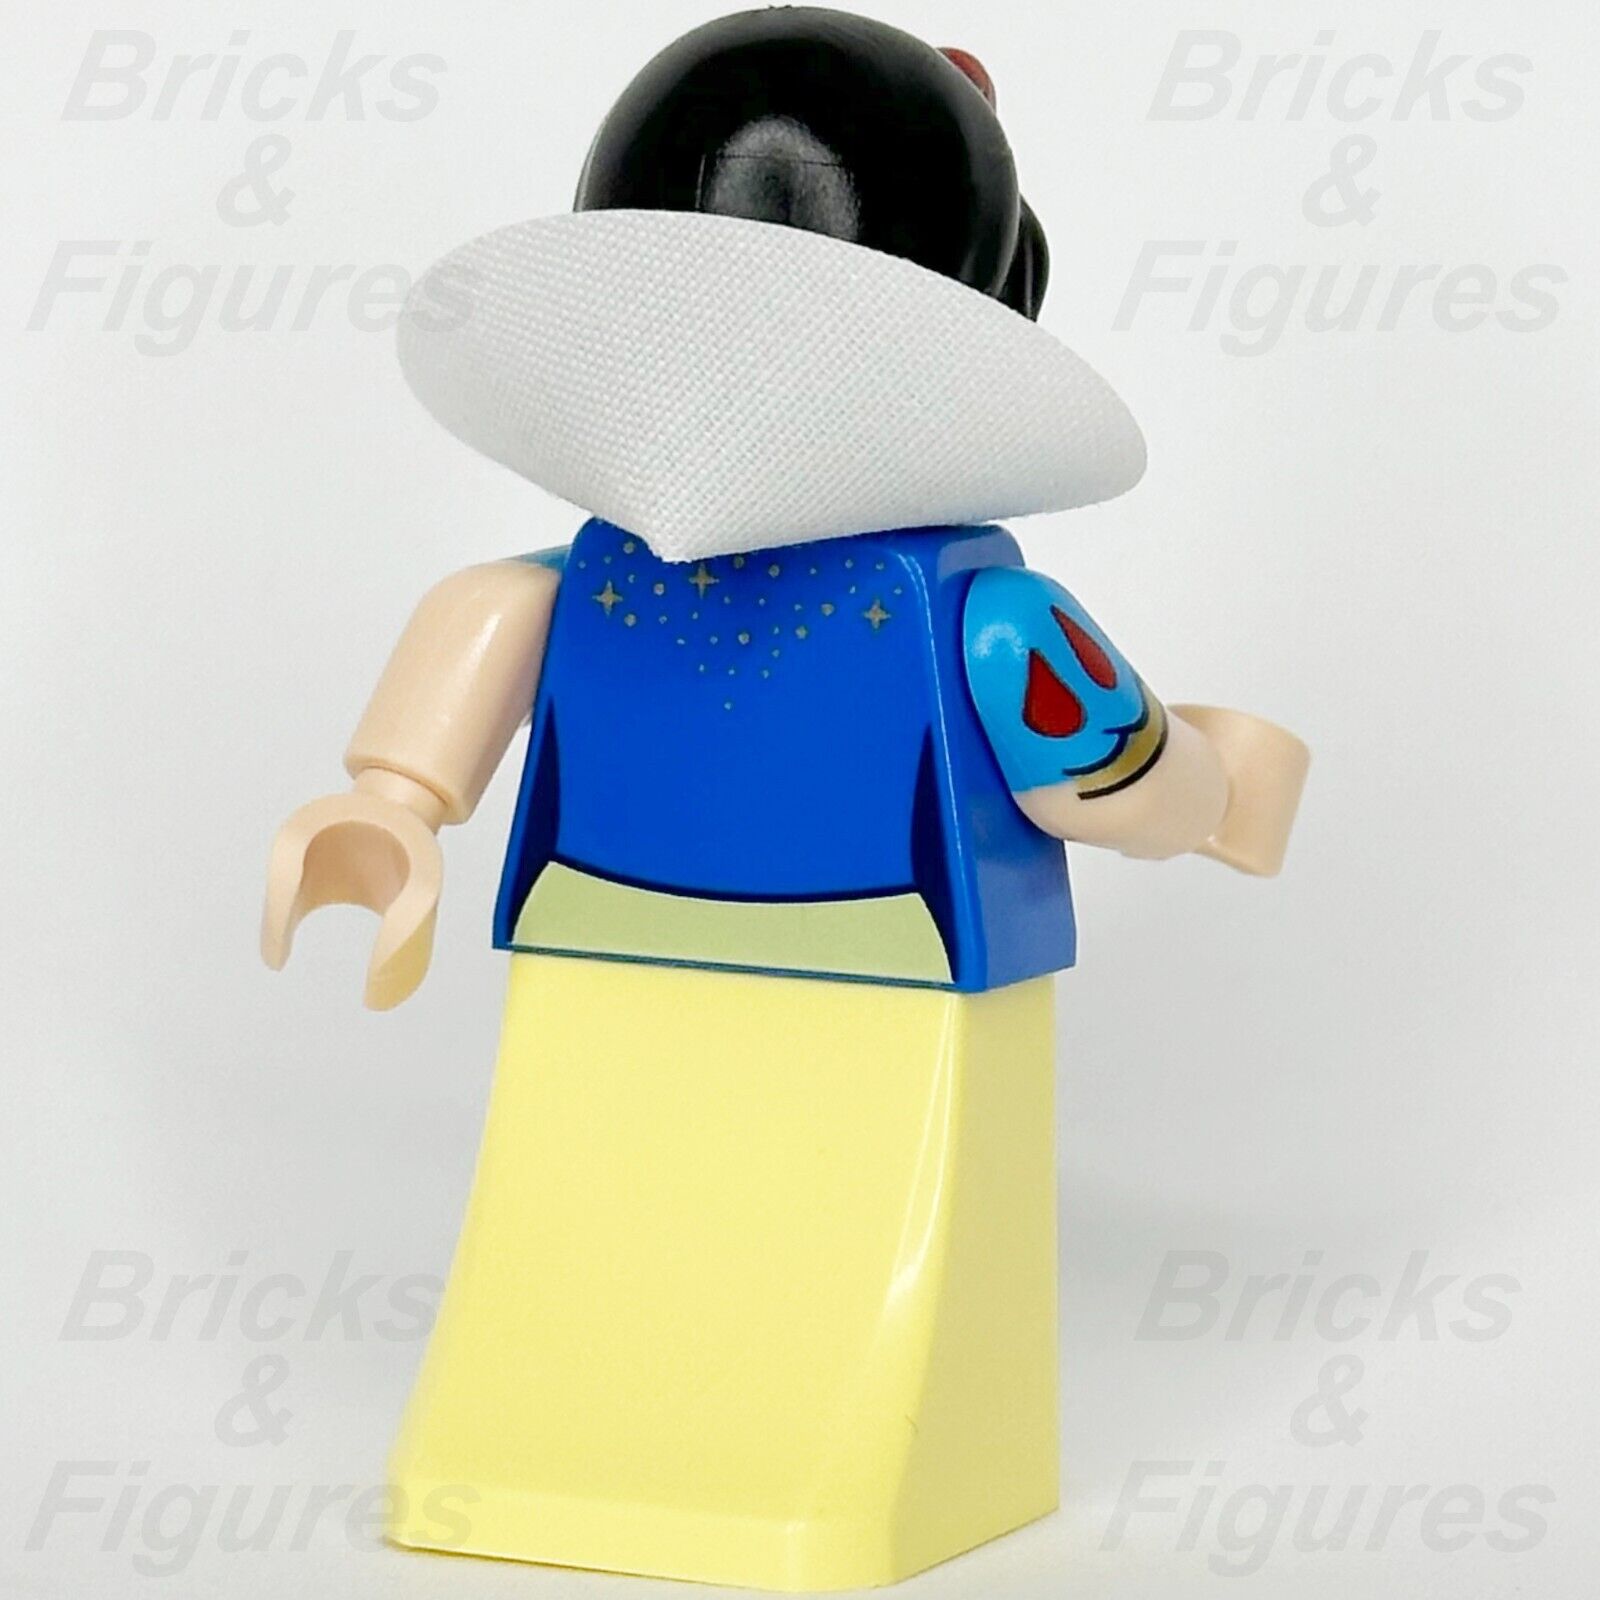 LEGO Disney Snow White Minifigure Disney 100 43222 dis134 Minifig